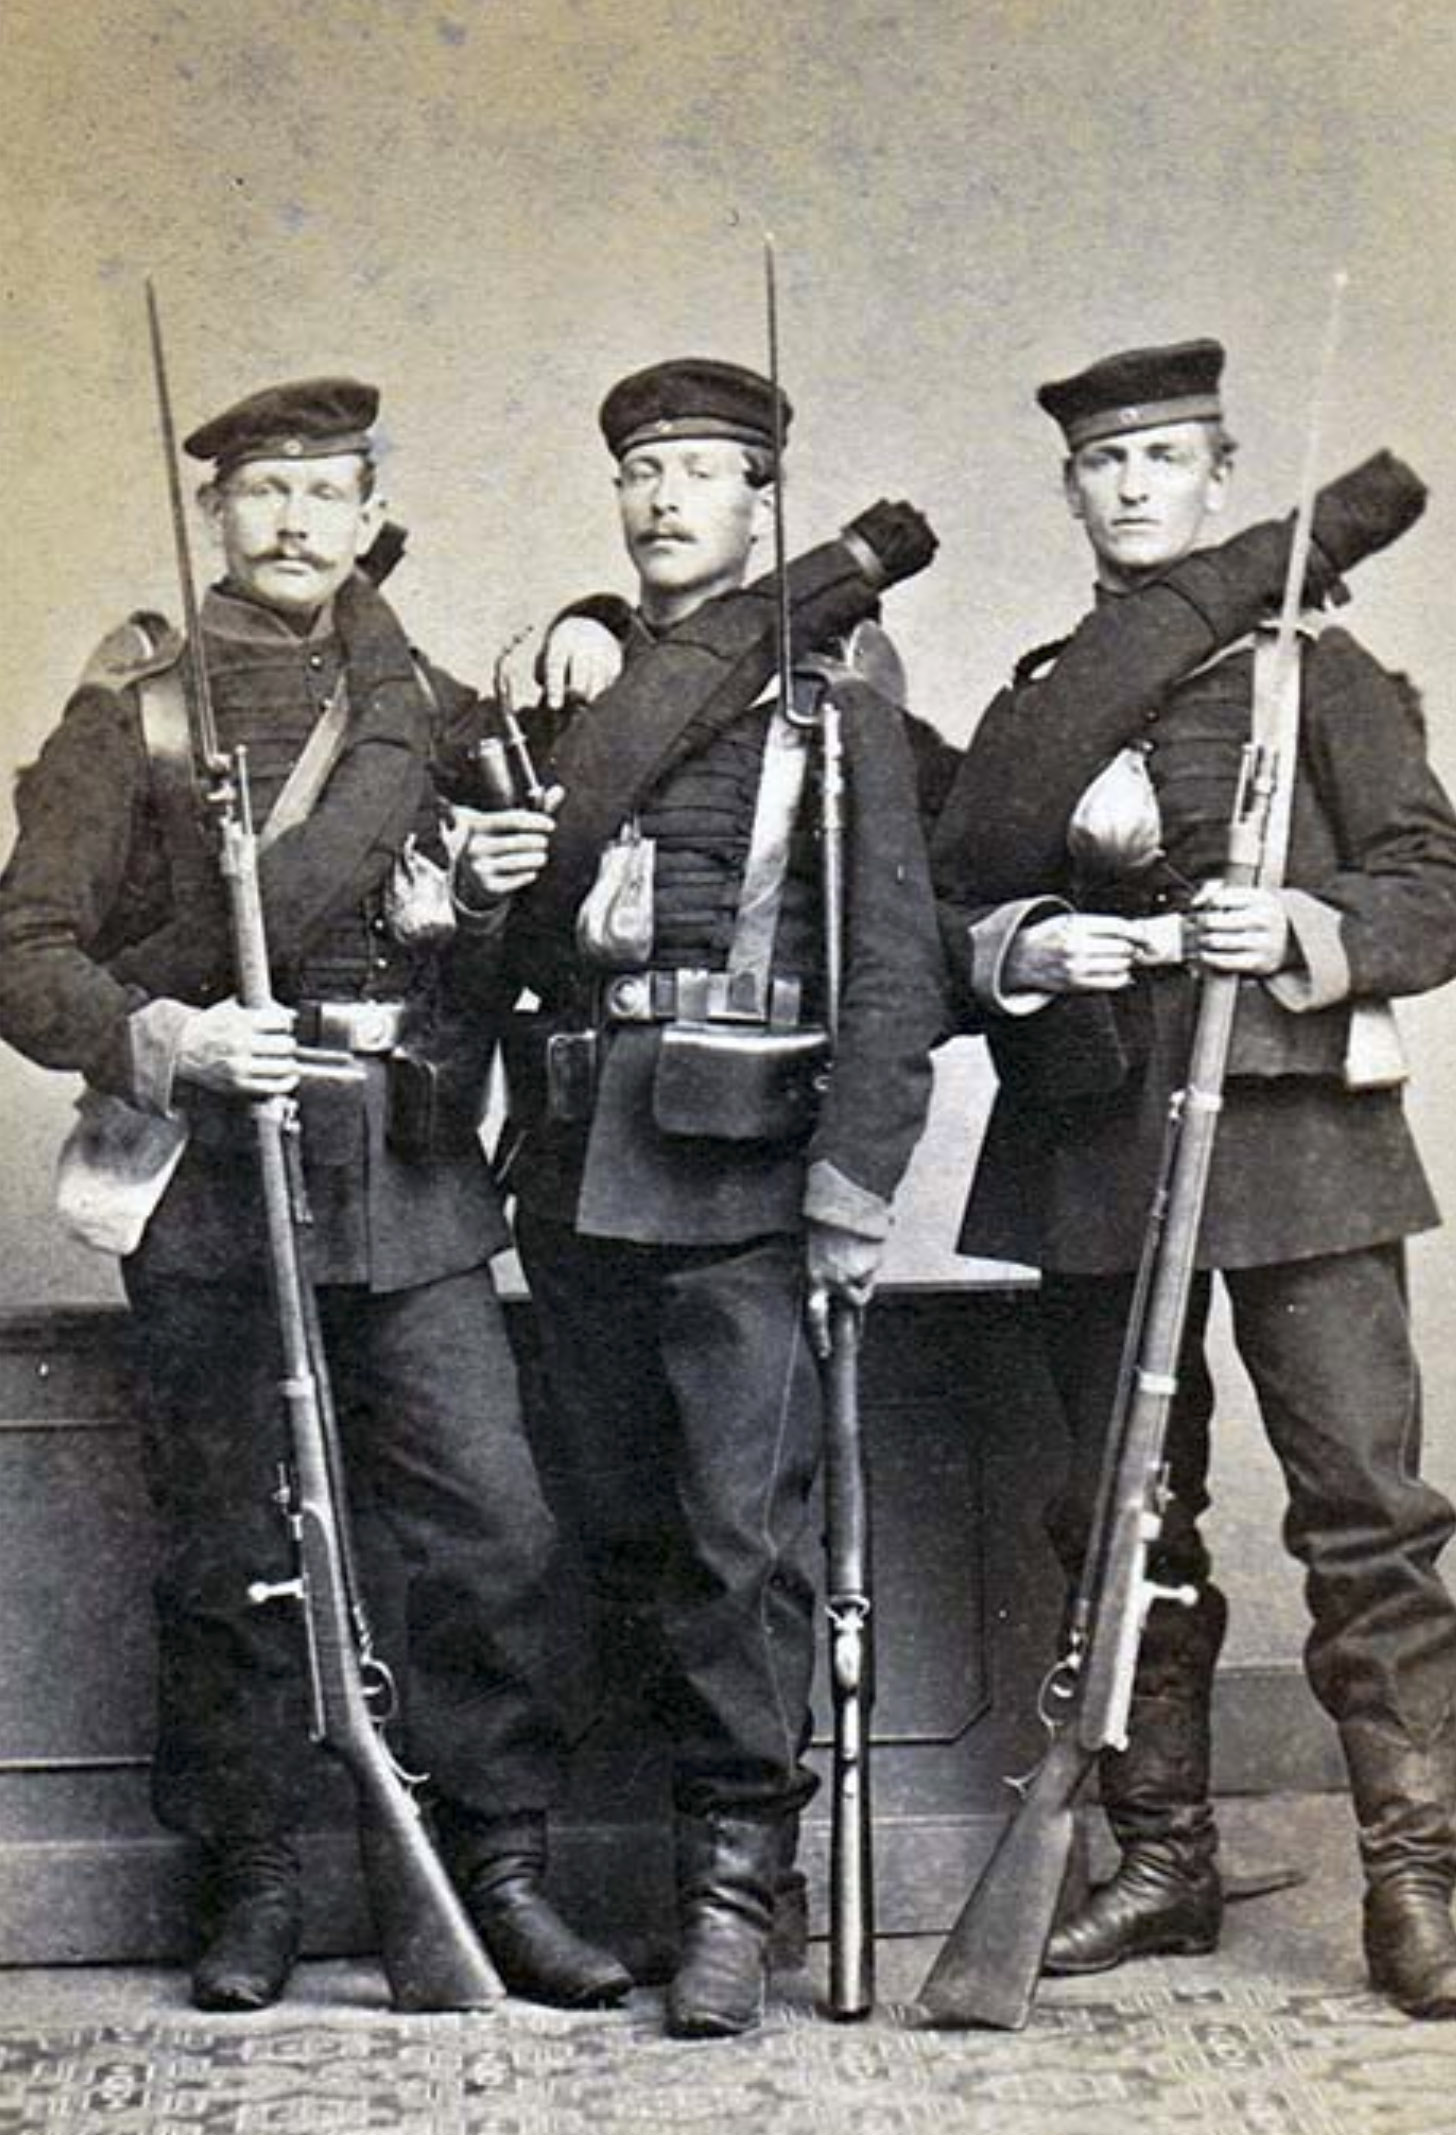 Germans with Dreyse rifles and socket bayonets